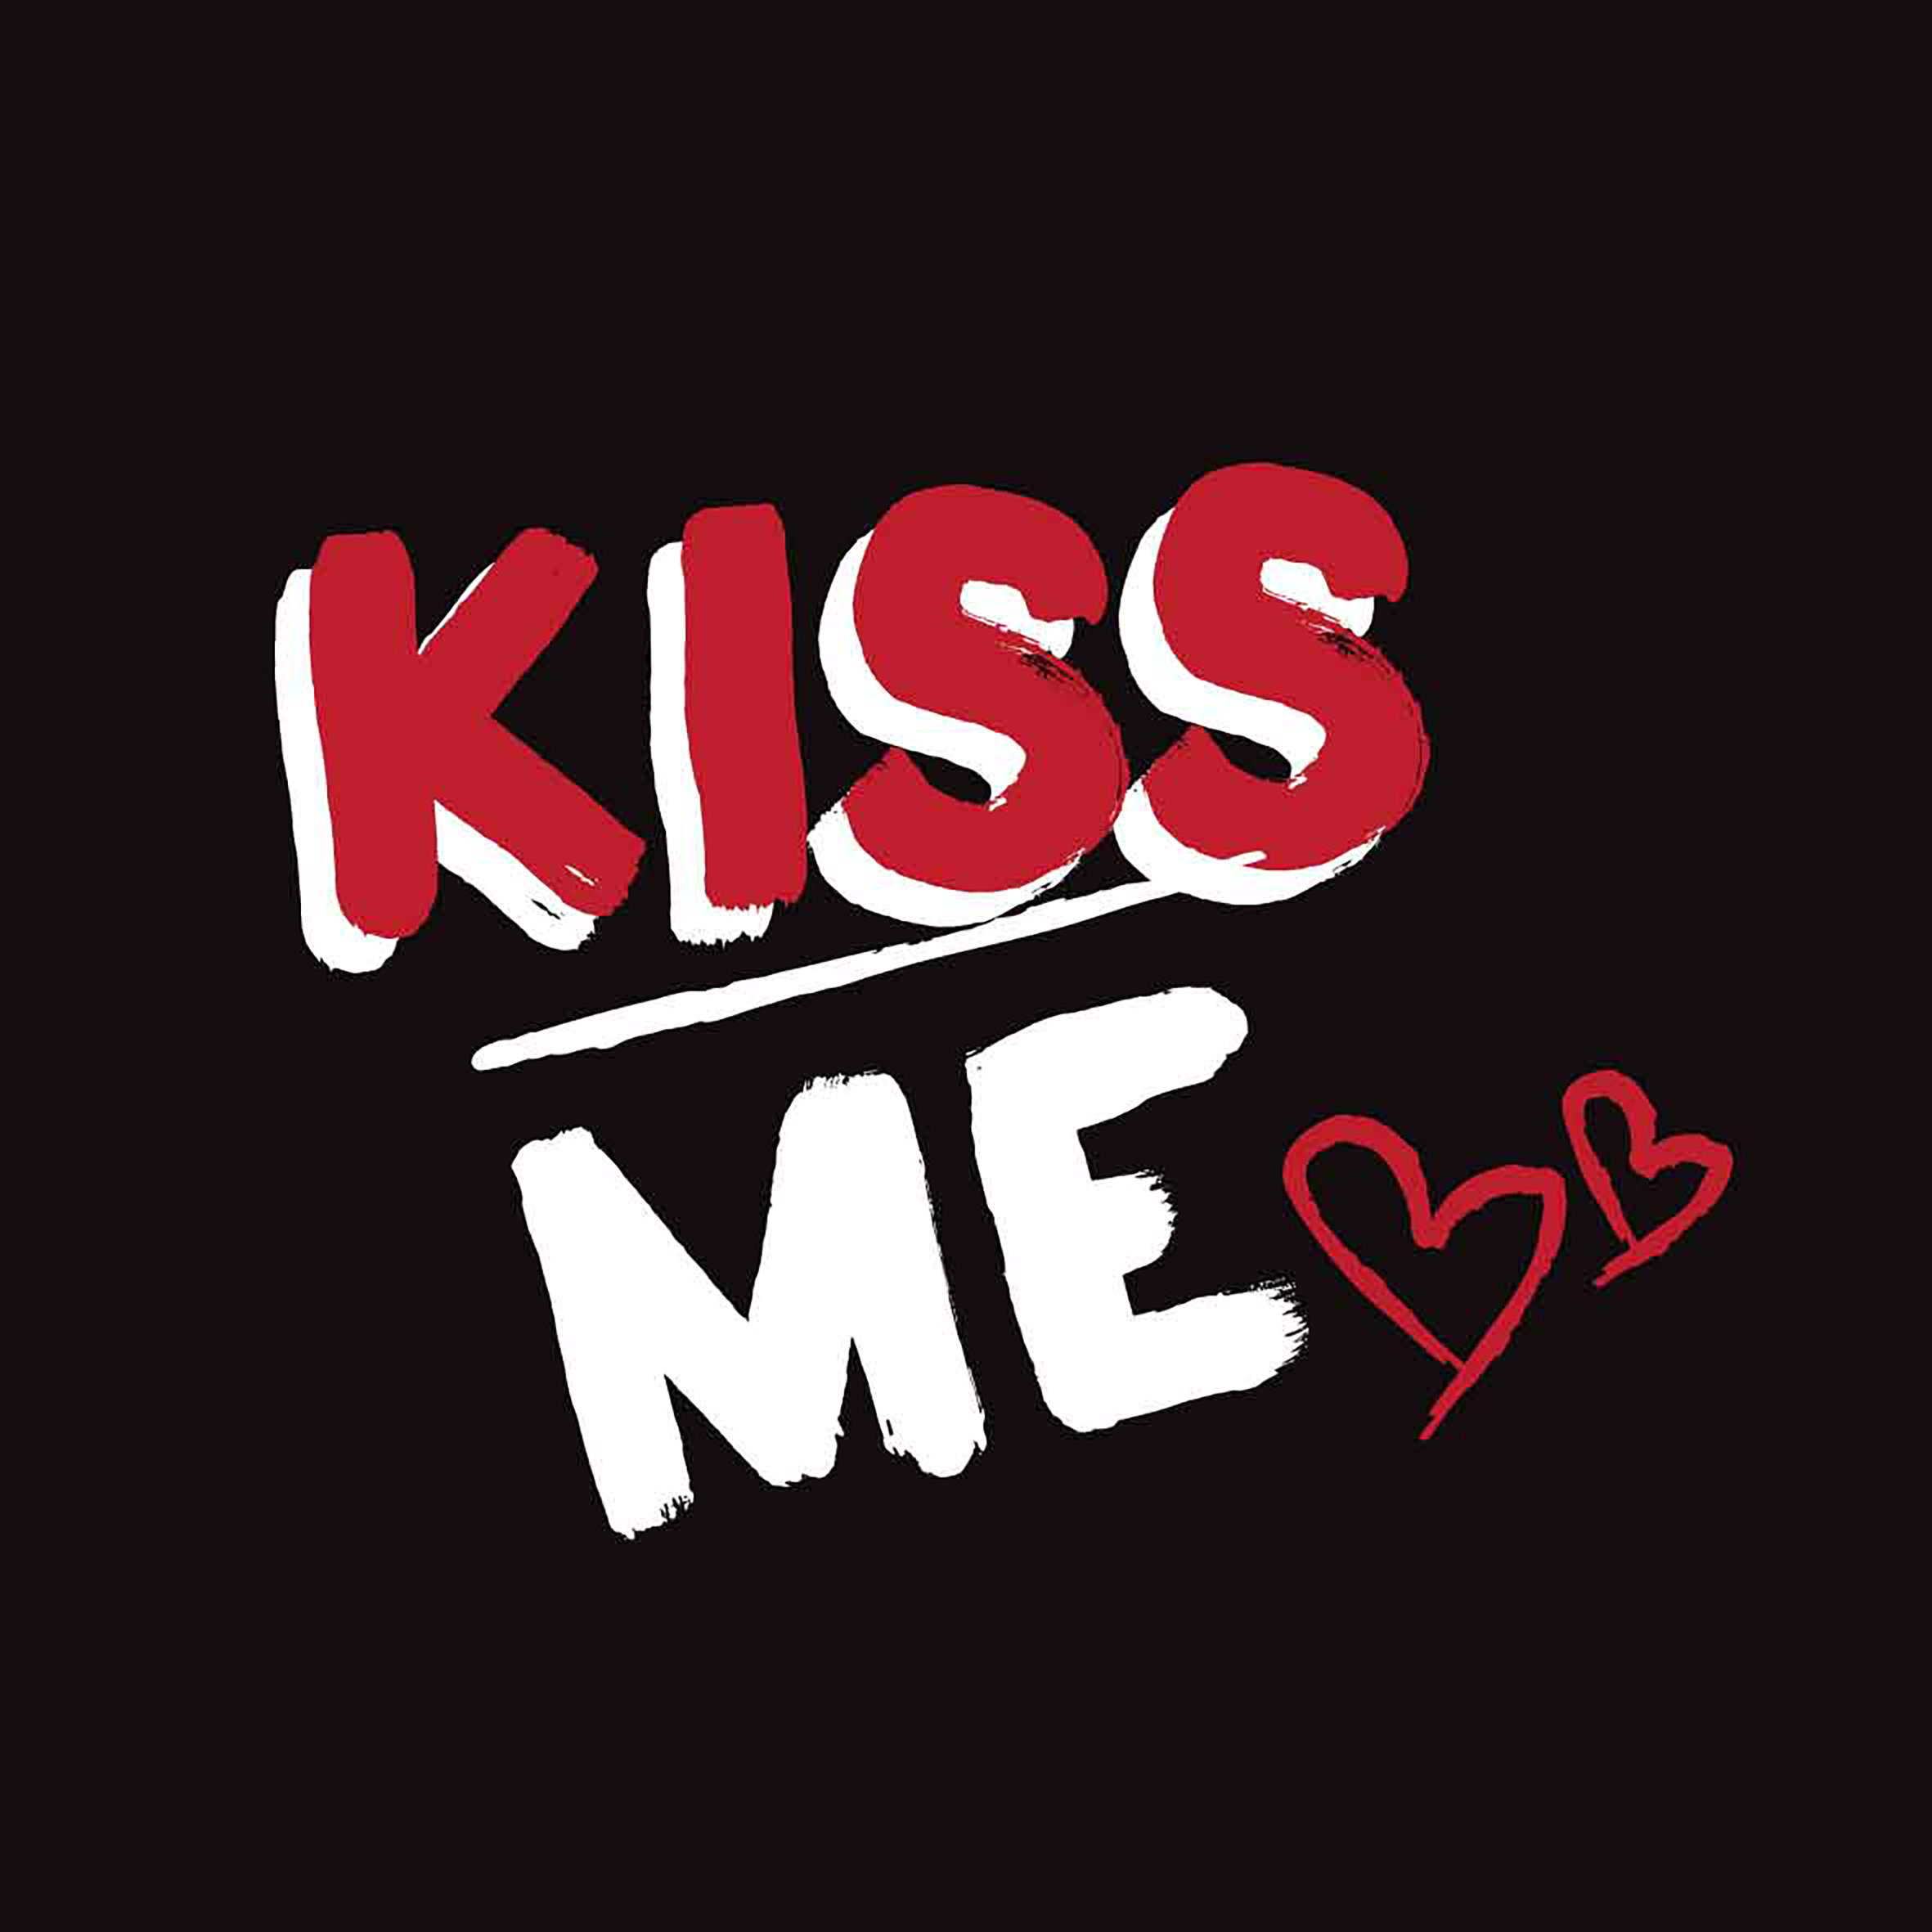 Kiss me my darling. Kiss надпись. Надпись Кисс ми. Кисс надпись красивая. Kiss me песня.